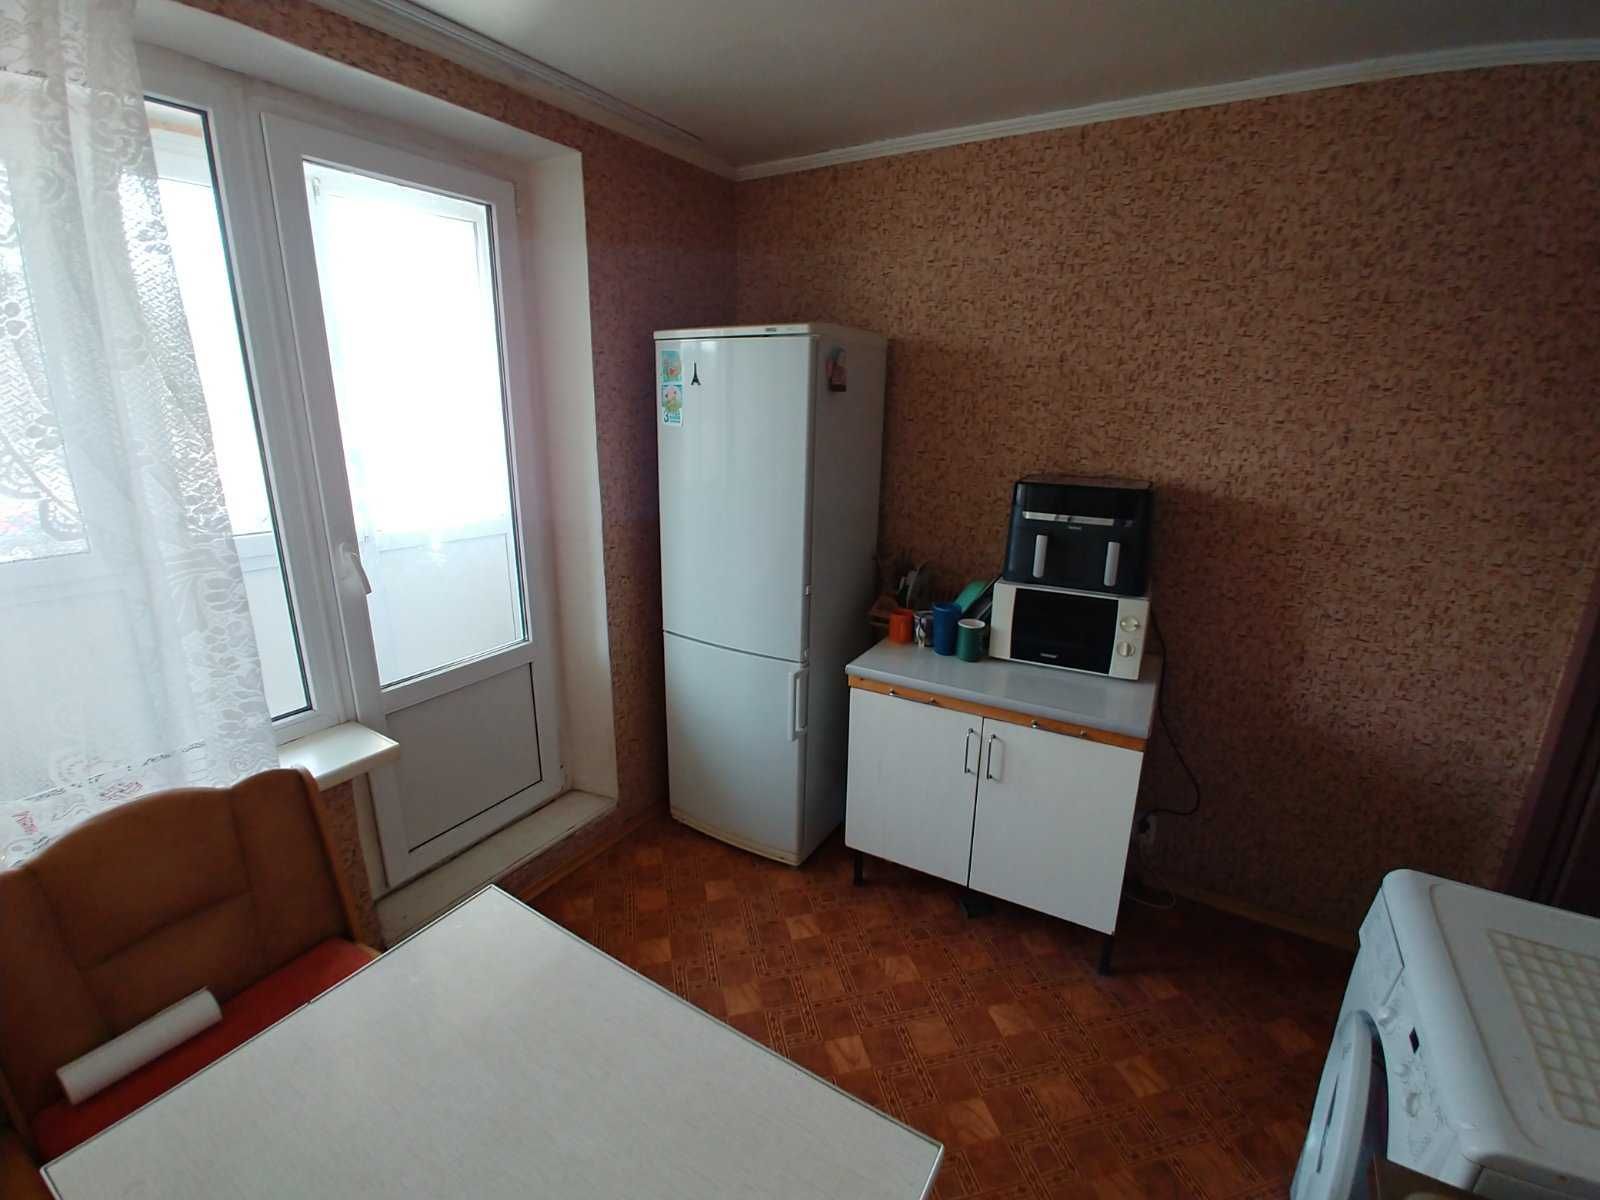 продам 1кімнатну квартиру на мінському масиві